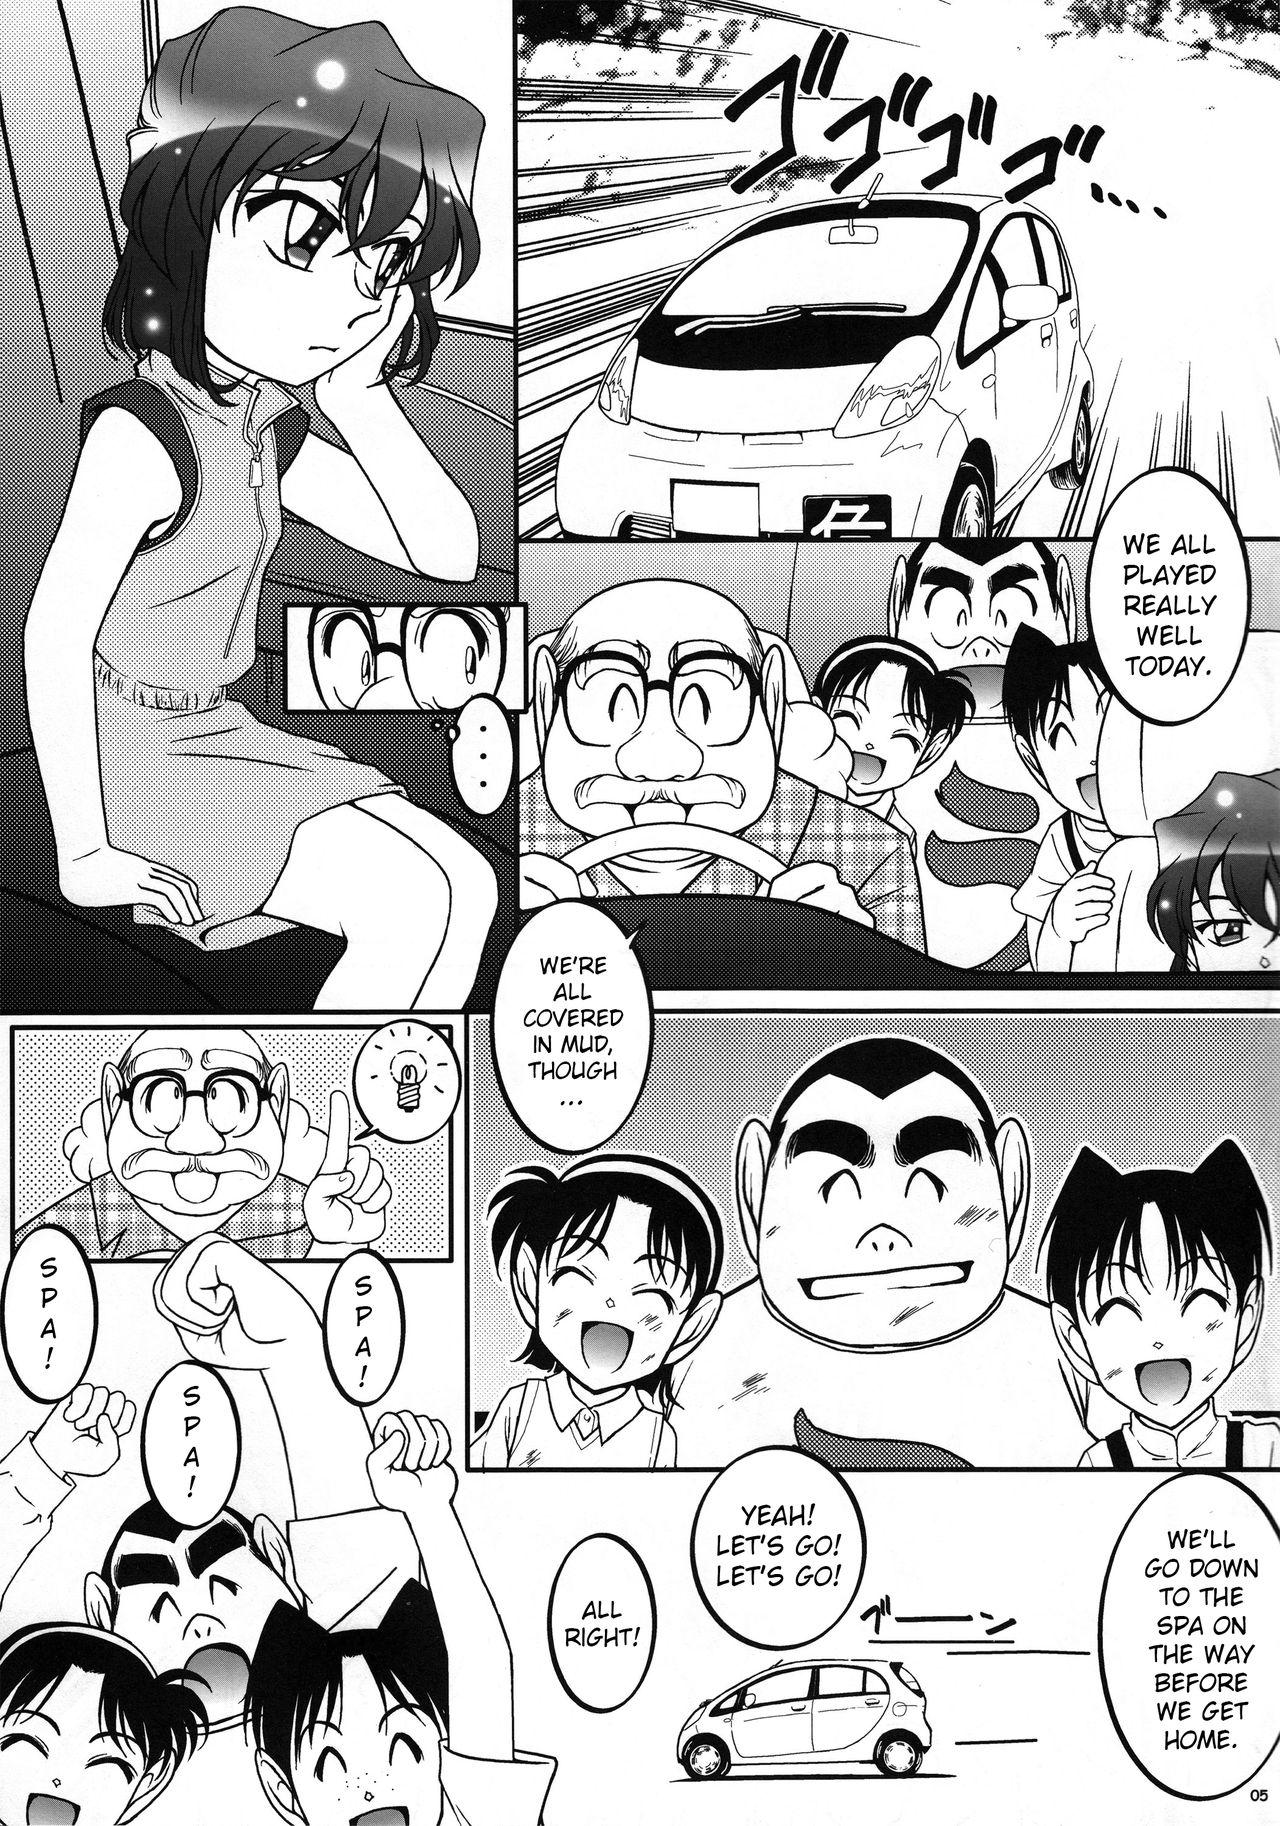 Ink Otoko yu de Dokkiri! EP0 - Detective conan Nuru - Page 4